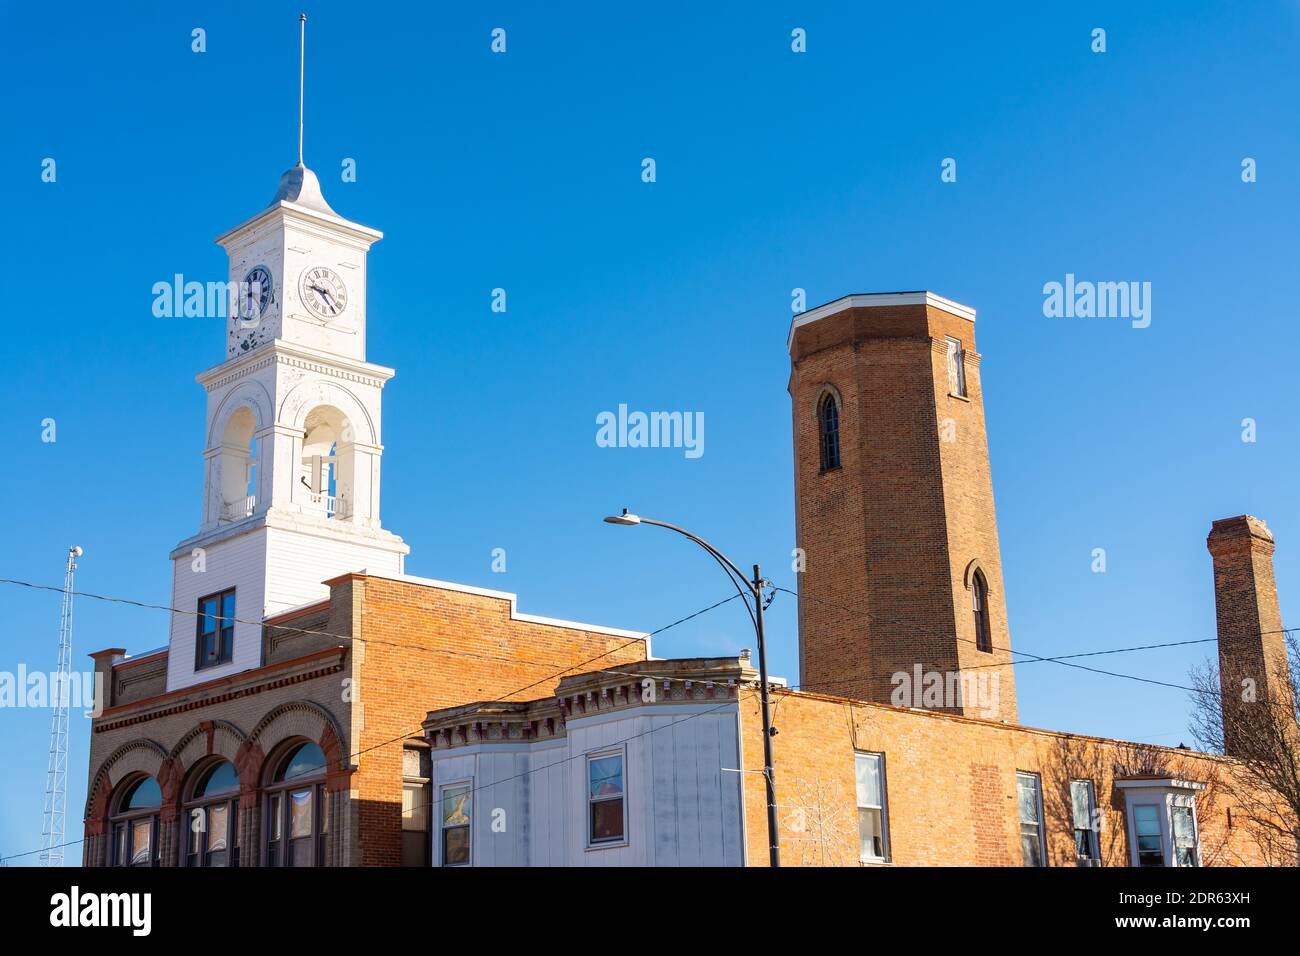 Edificios antiguos en la pequeña ciudad del medio oeste. Paxton, Illinois, EE.UU Foto de stock